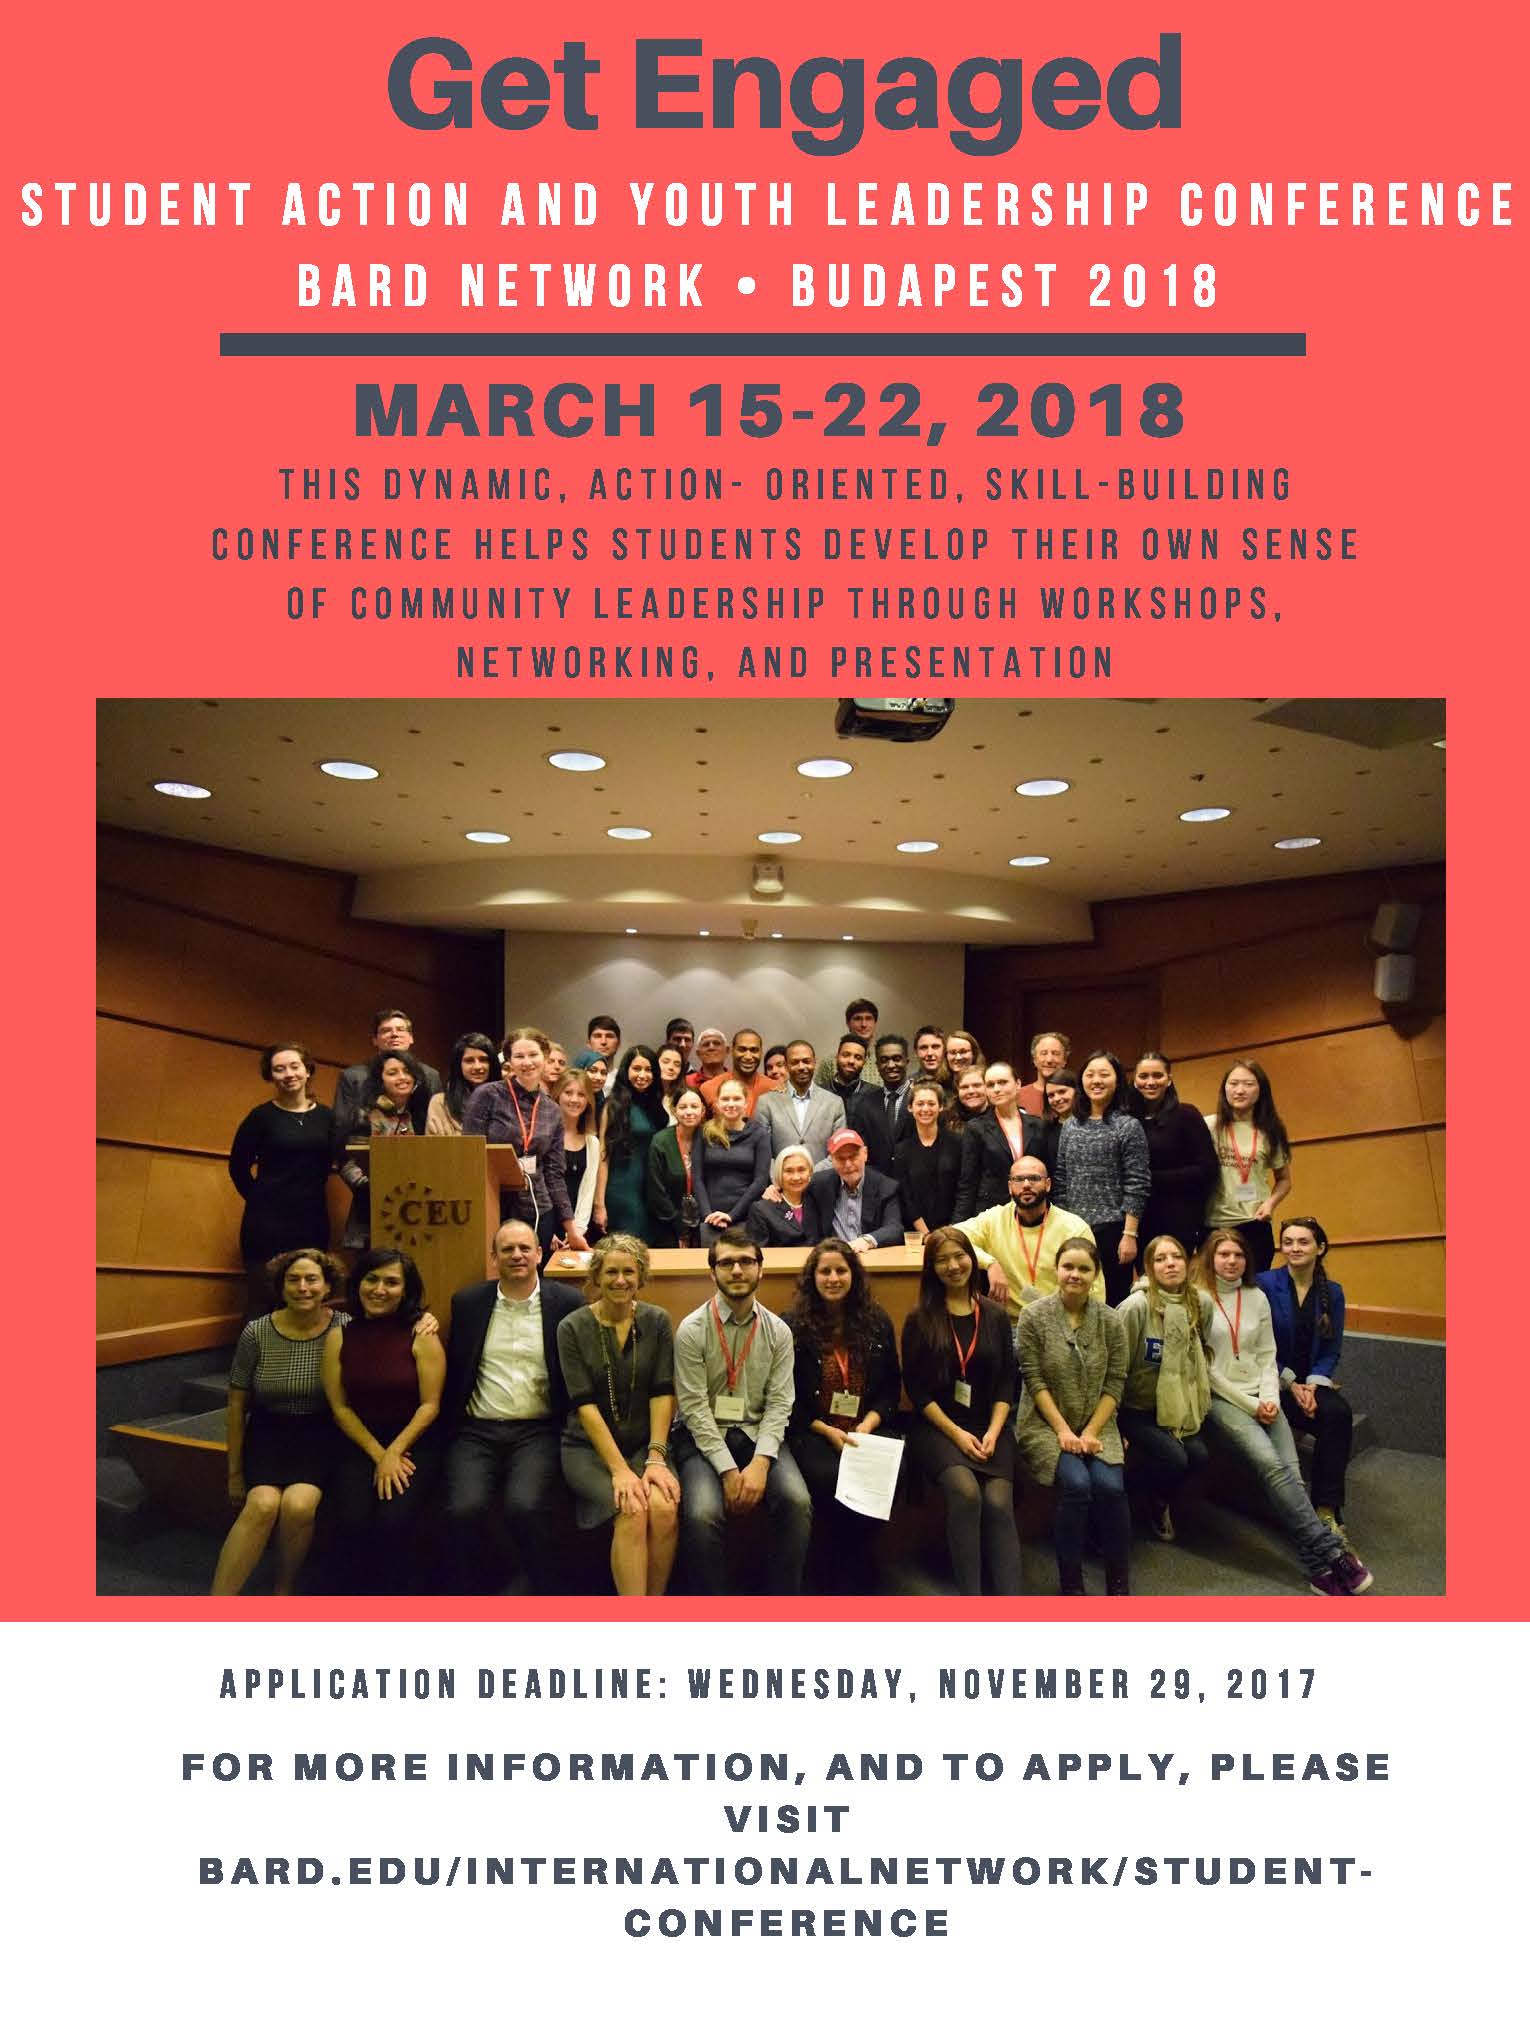 Visit https://www.bard.edu/internationalnetwork/student-conference/